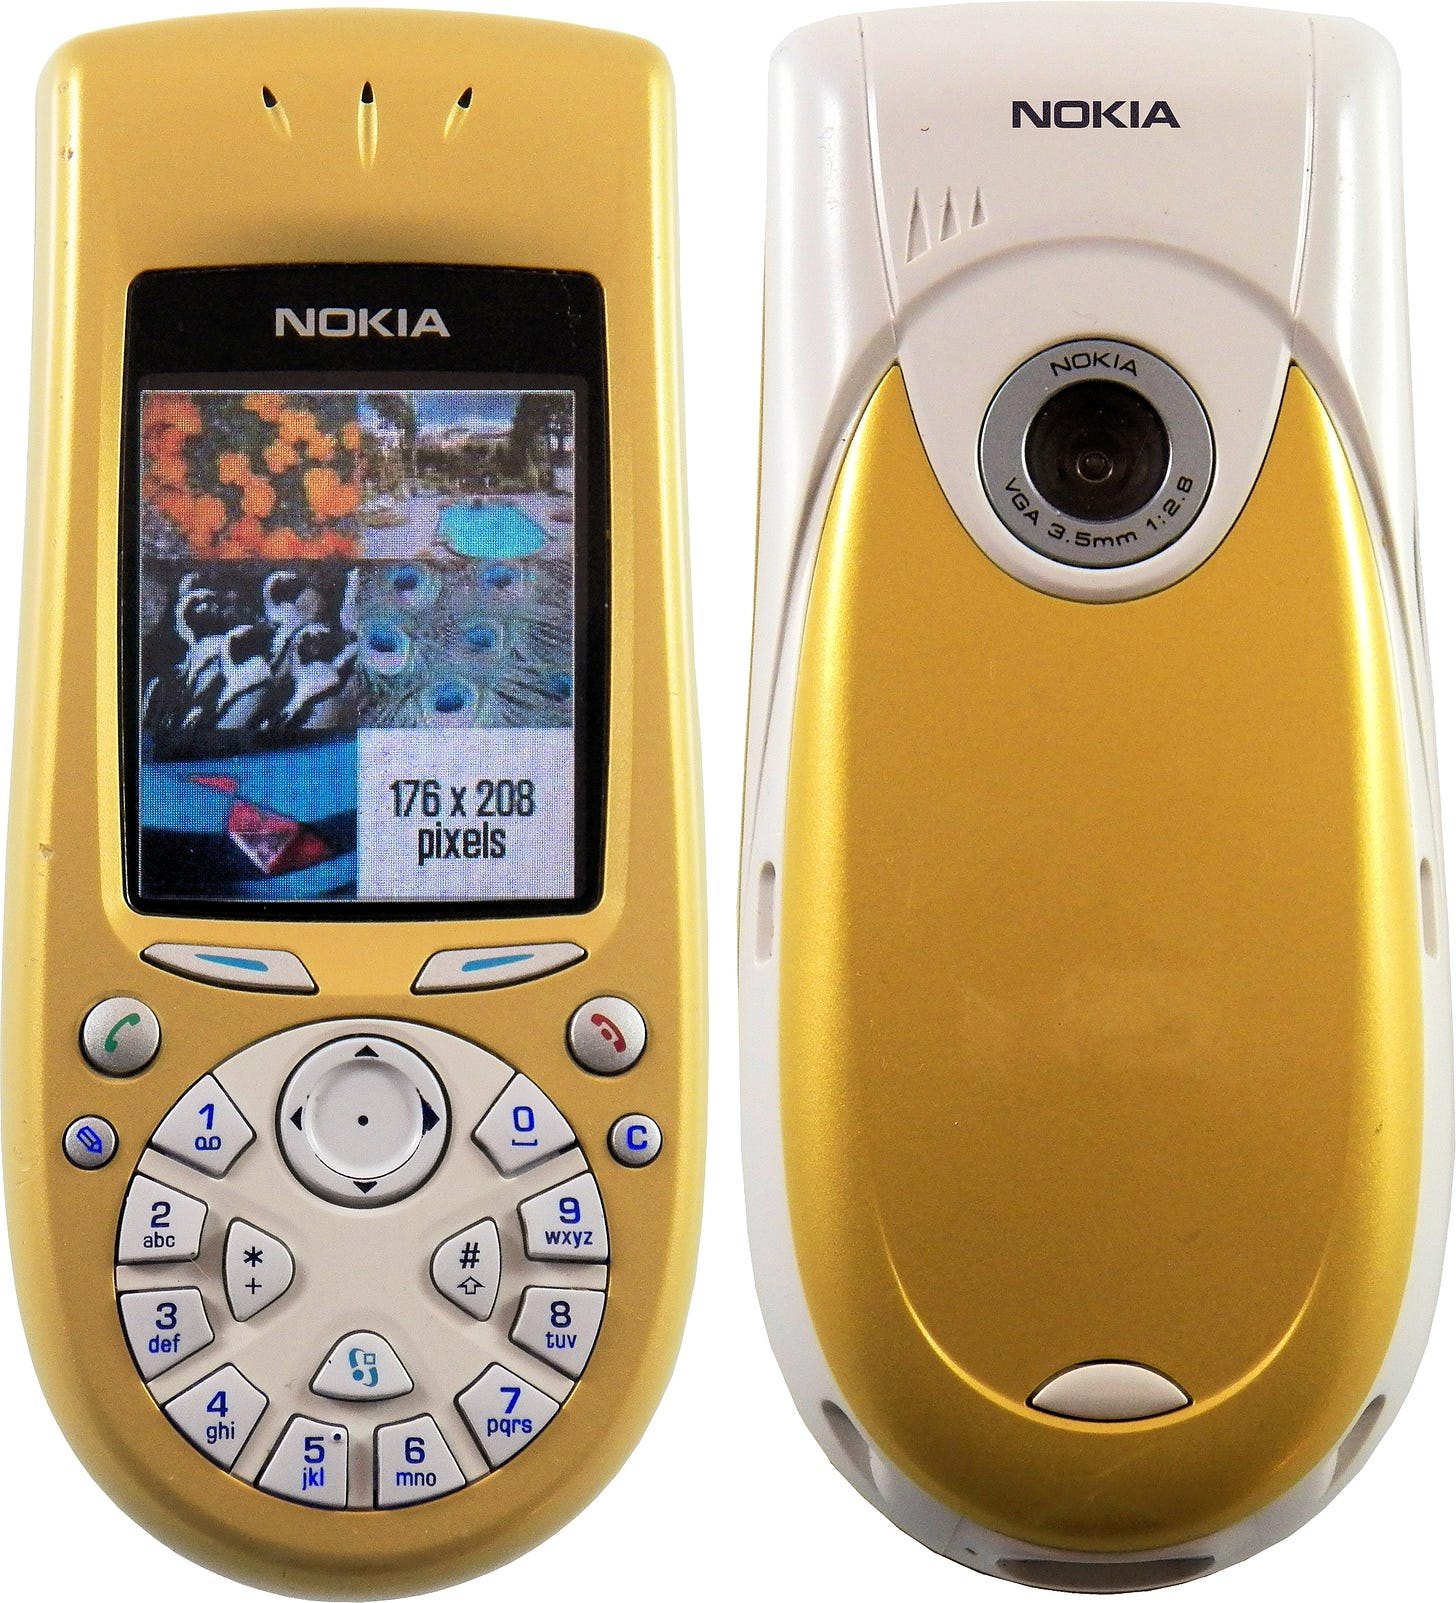 Nokia 3650 - Wikipedia